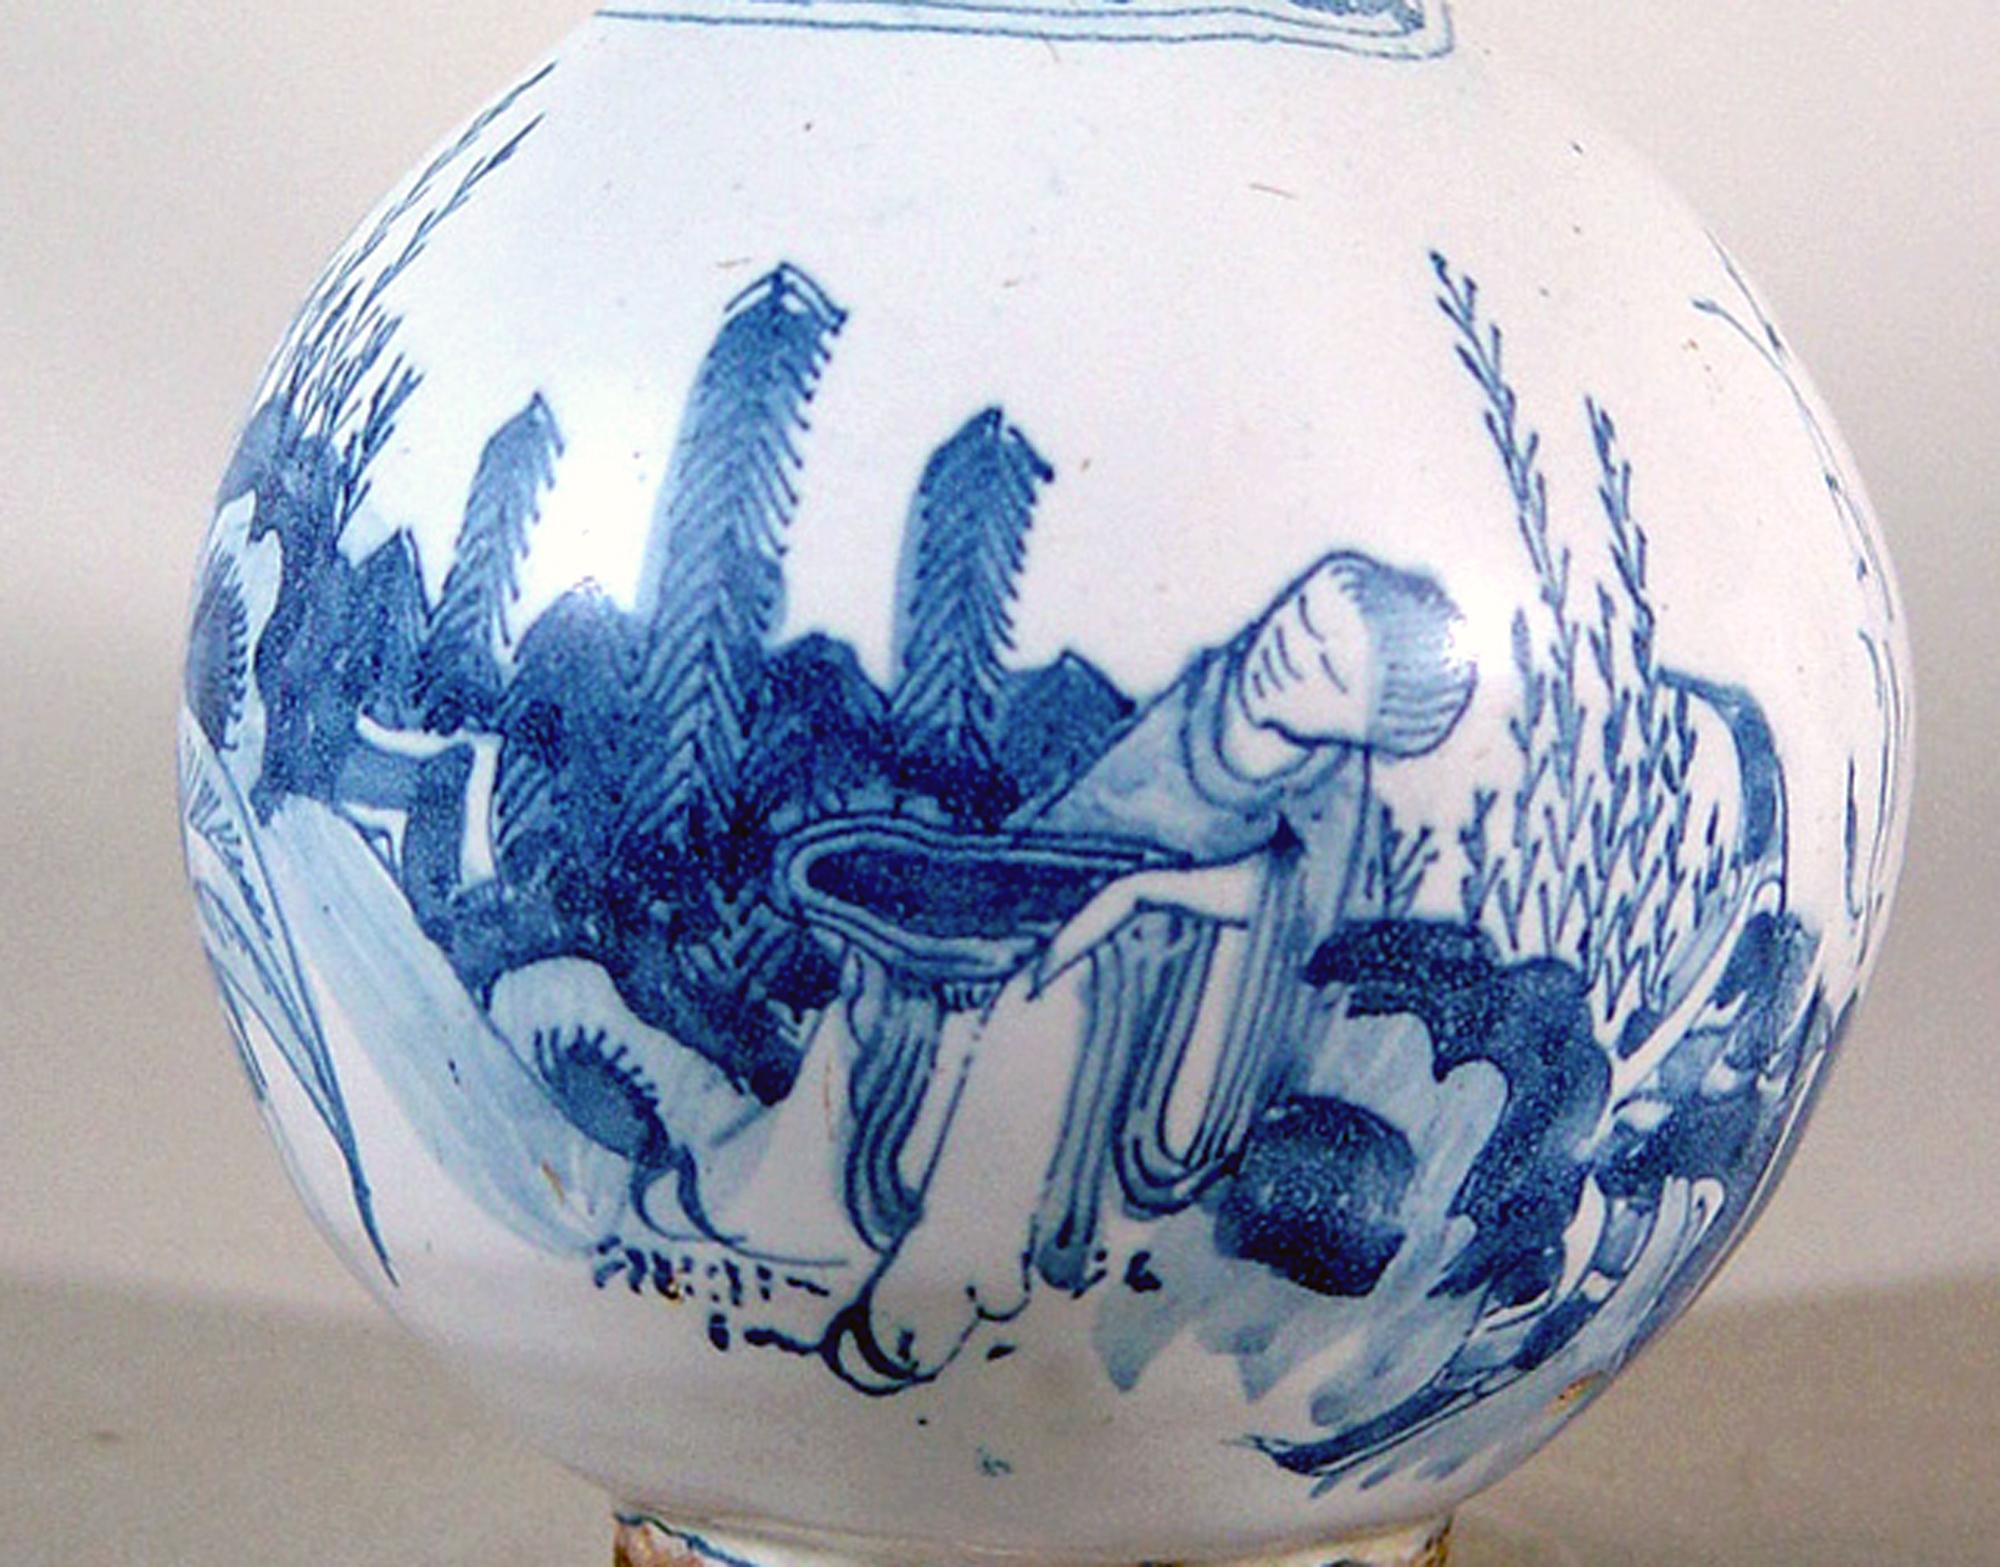 17. Jahrhundert Frankfurt am Main Deutsche Fayence Blau-Weiß-Chinoiserie Trompetenhals-Flaschenvase,
ca. 1680-90.

Die Vase ist in Unterglasurblau und Weiß mit einer Chinoiserie-Landschaft mit einer chinesischen Figur mit Bananenstauden und